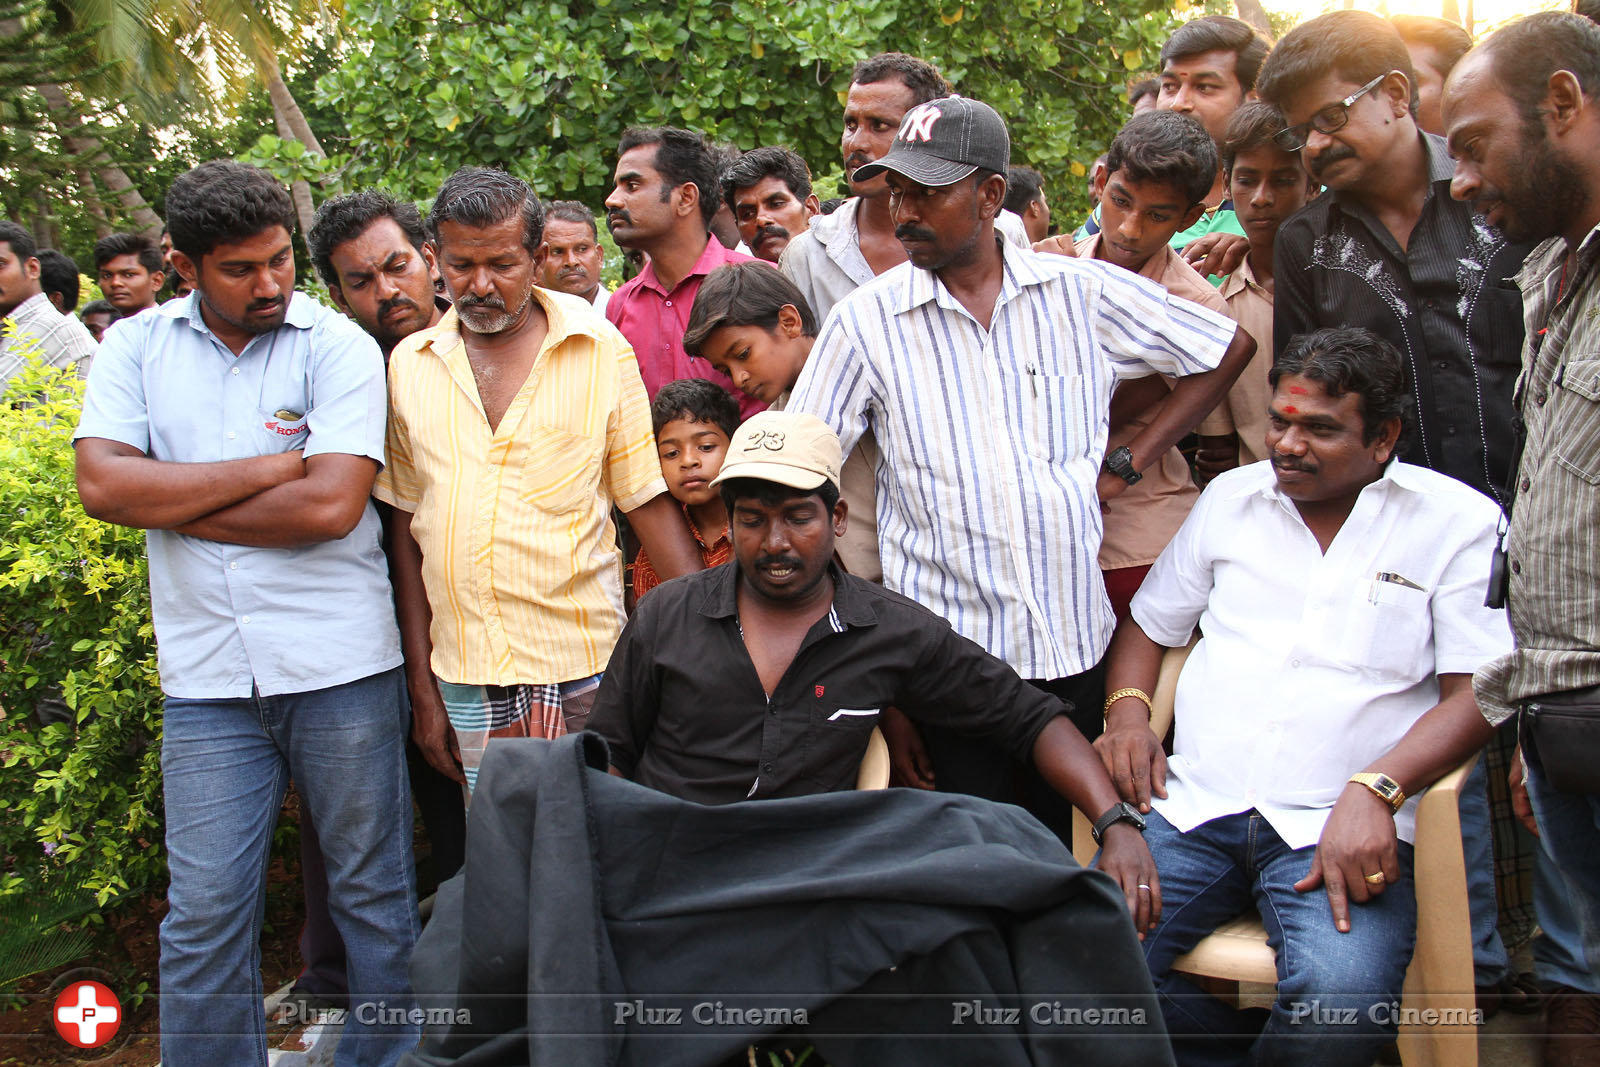 Summavae Aaduvom Movie Working stills | Picture 1331641